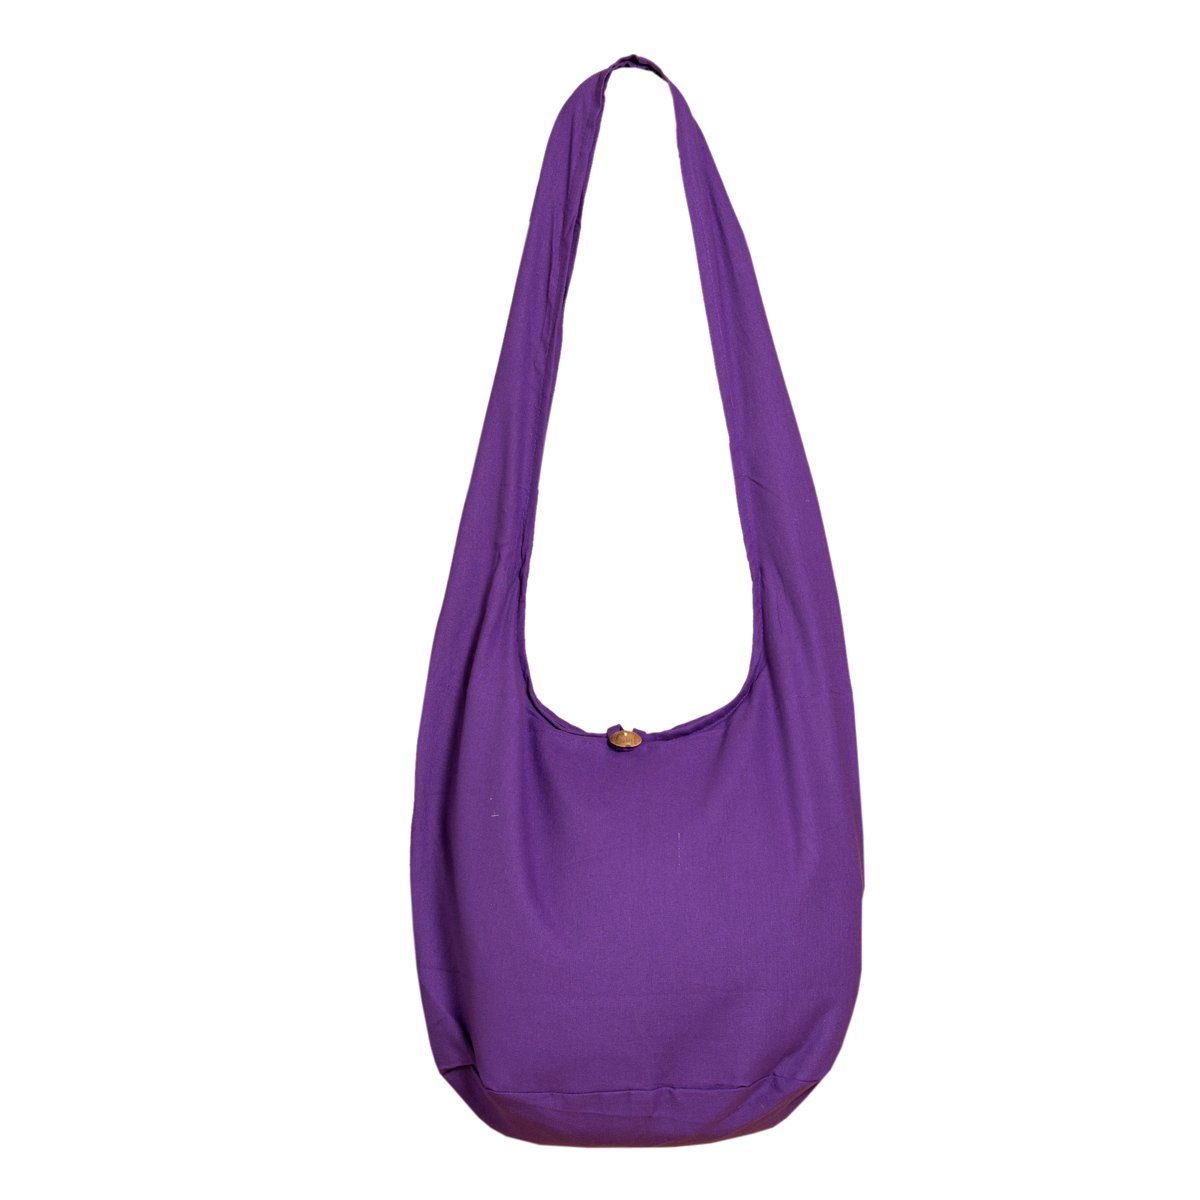 PANASIAM Beuteltasche Schulterbeutel einfarbig Schultertasche aus 100% Baumwolle in 2 Größen, Umhängetasche auch als Wickeltasche Handtasche oder Strandtasche violette